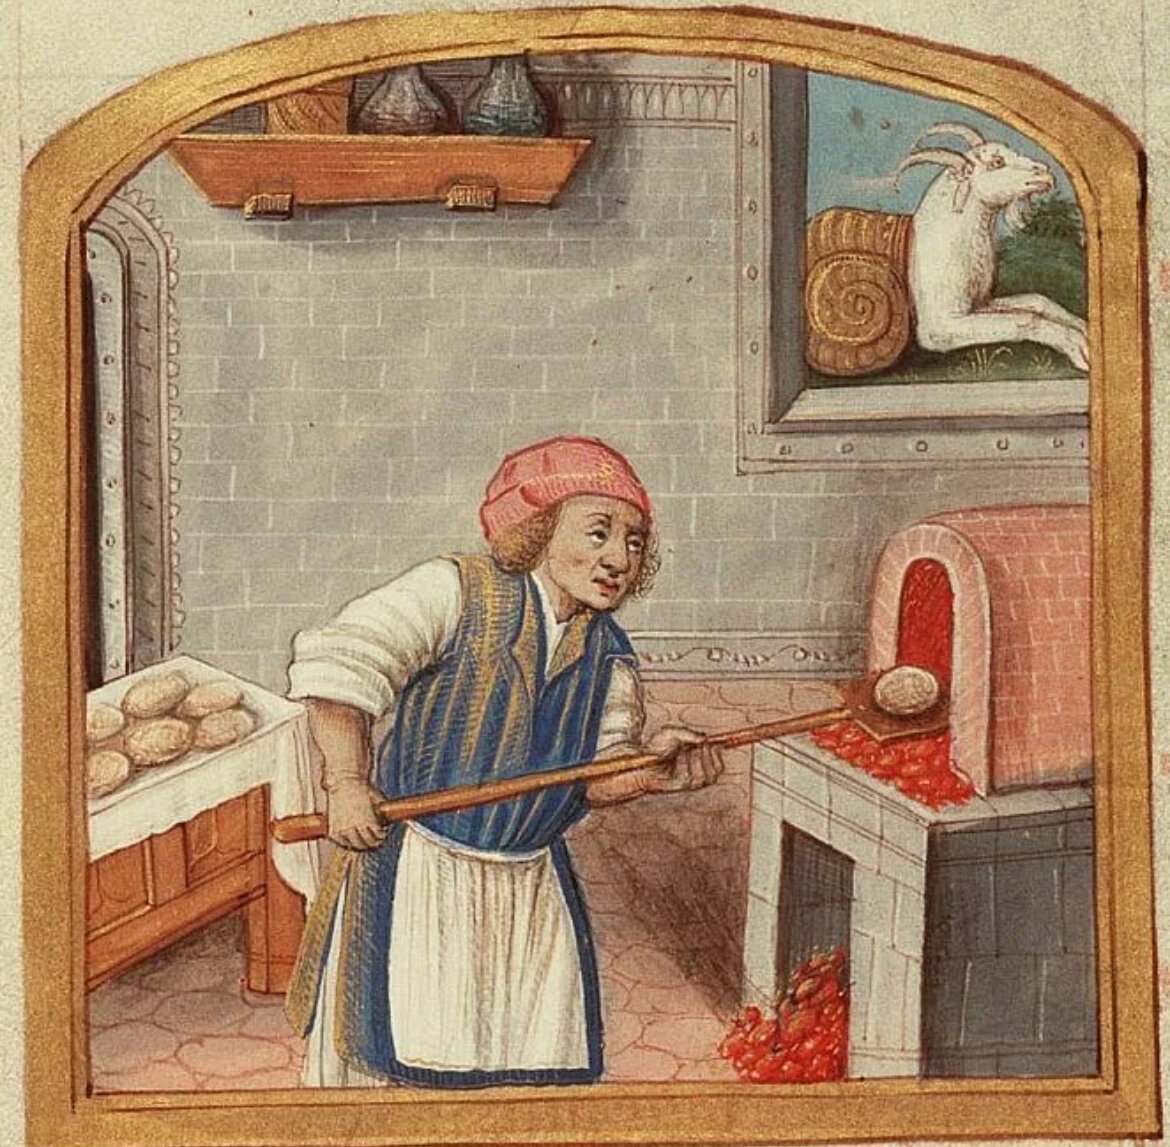 Сын булочника прическа фото в древности